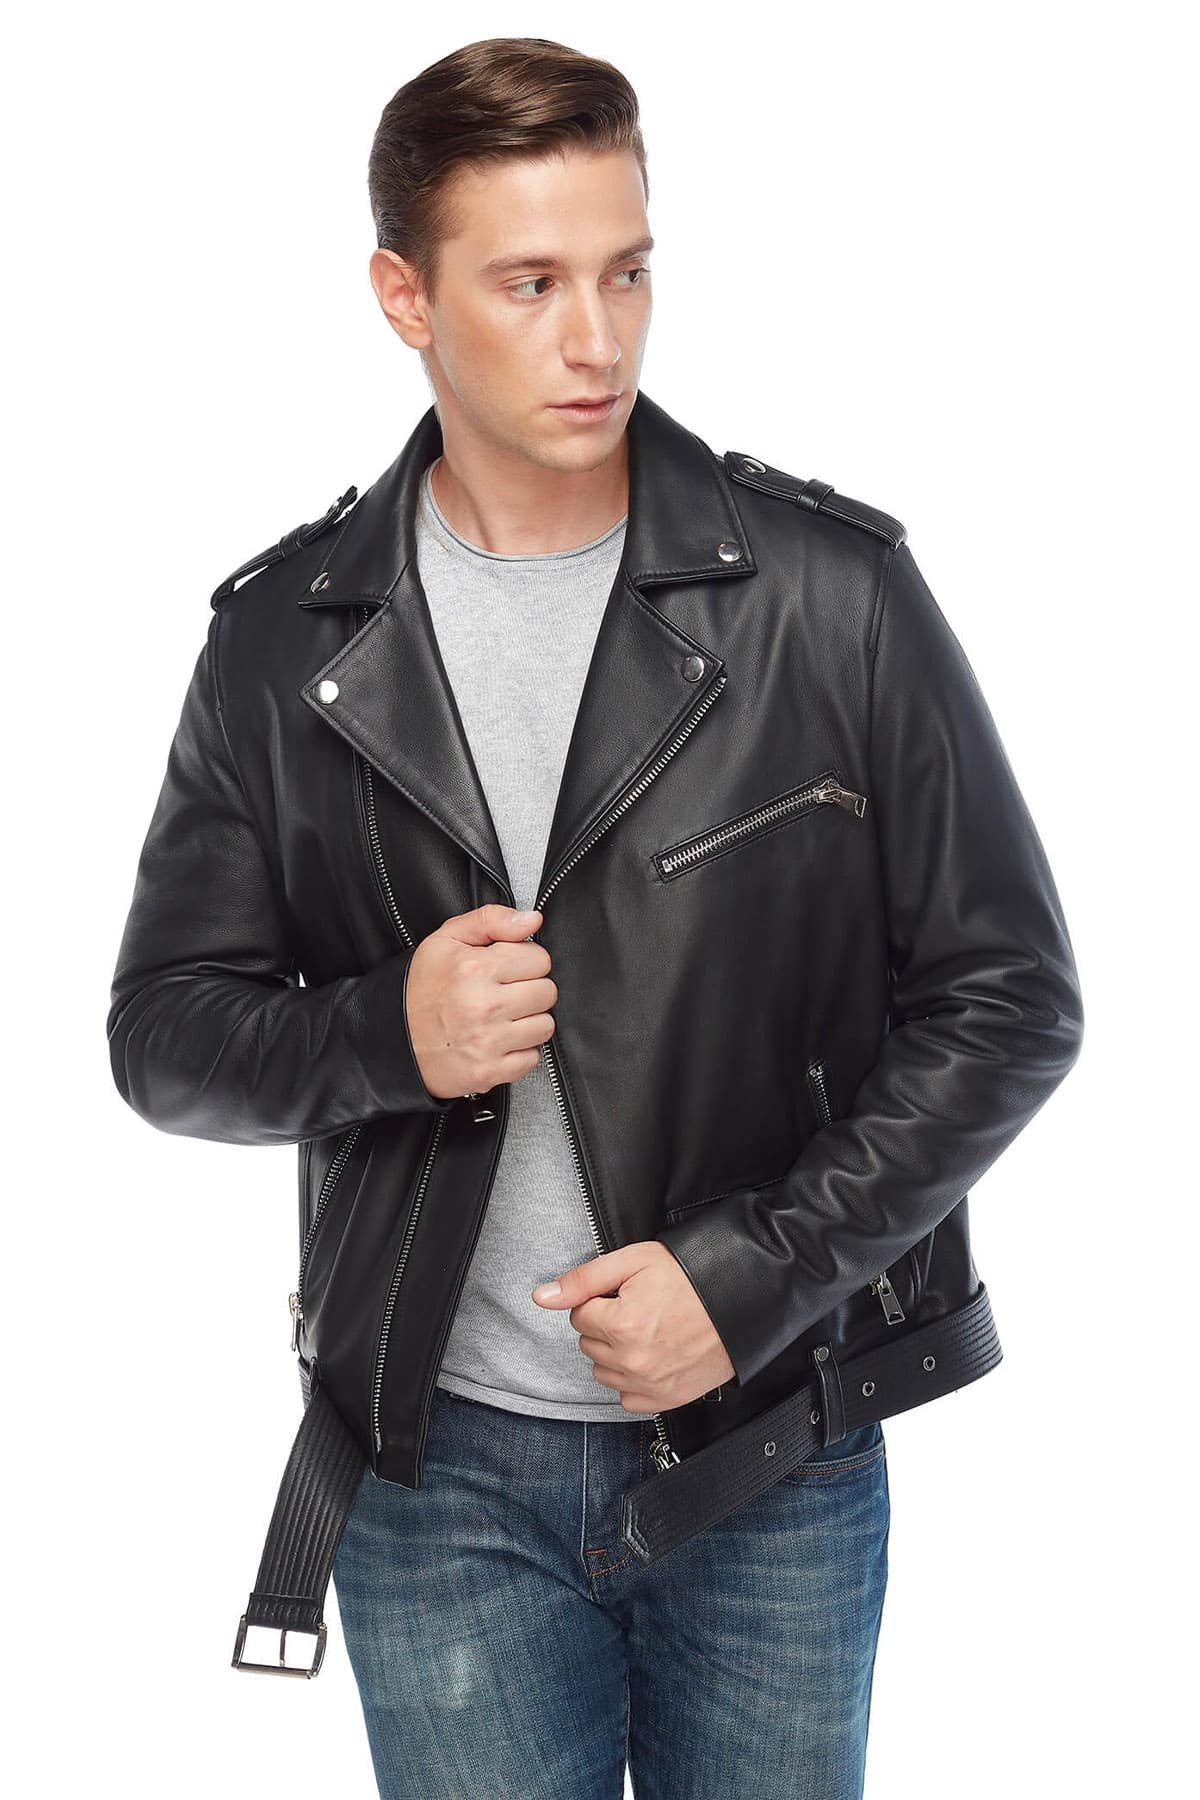 Men's black leather biker jacket